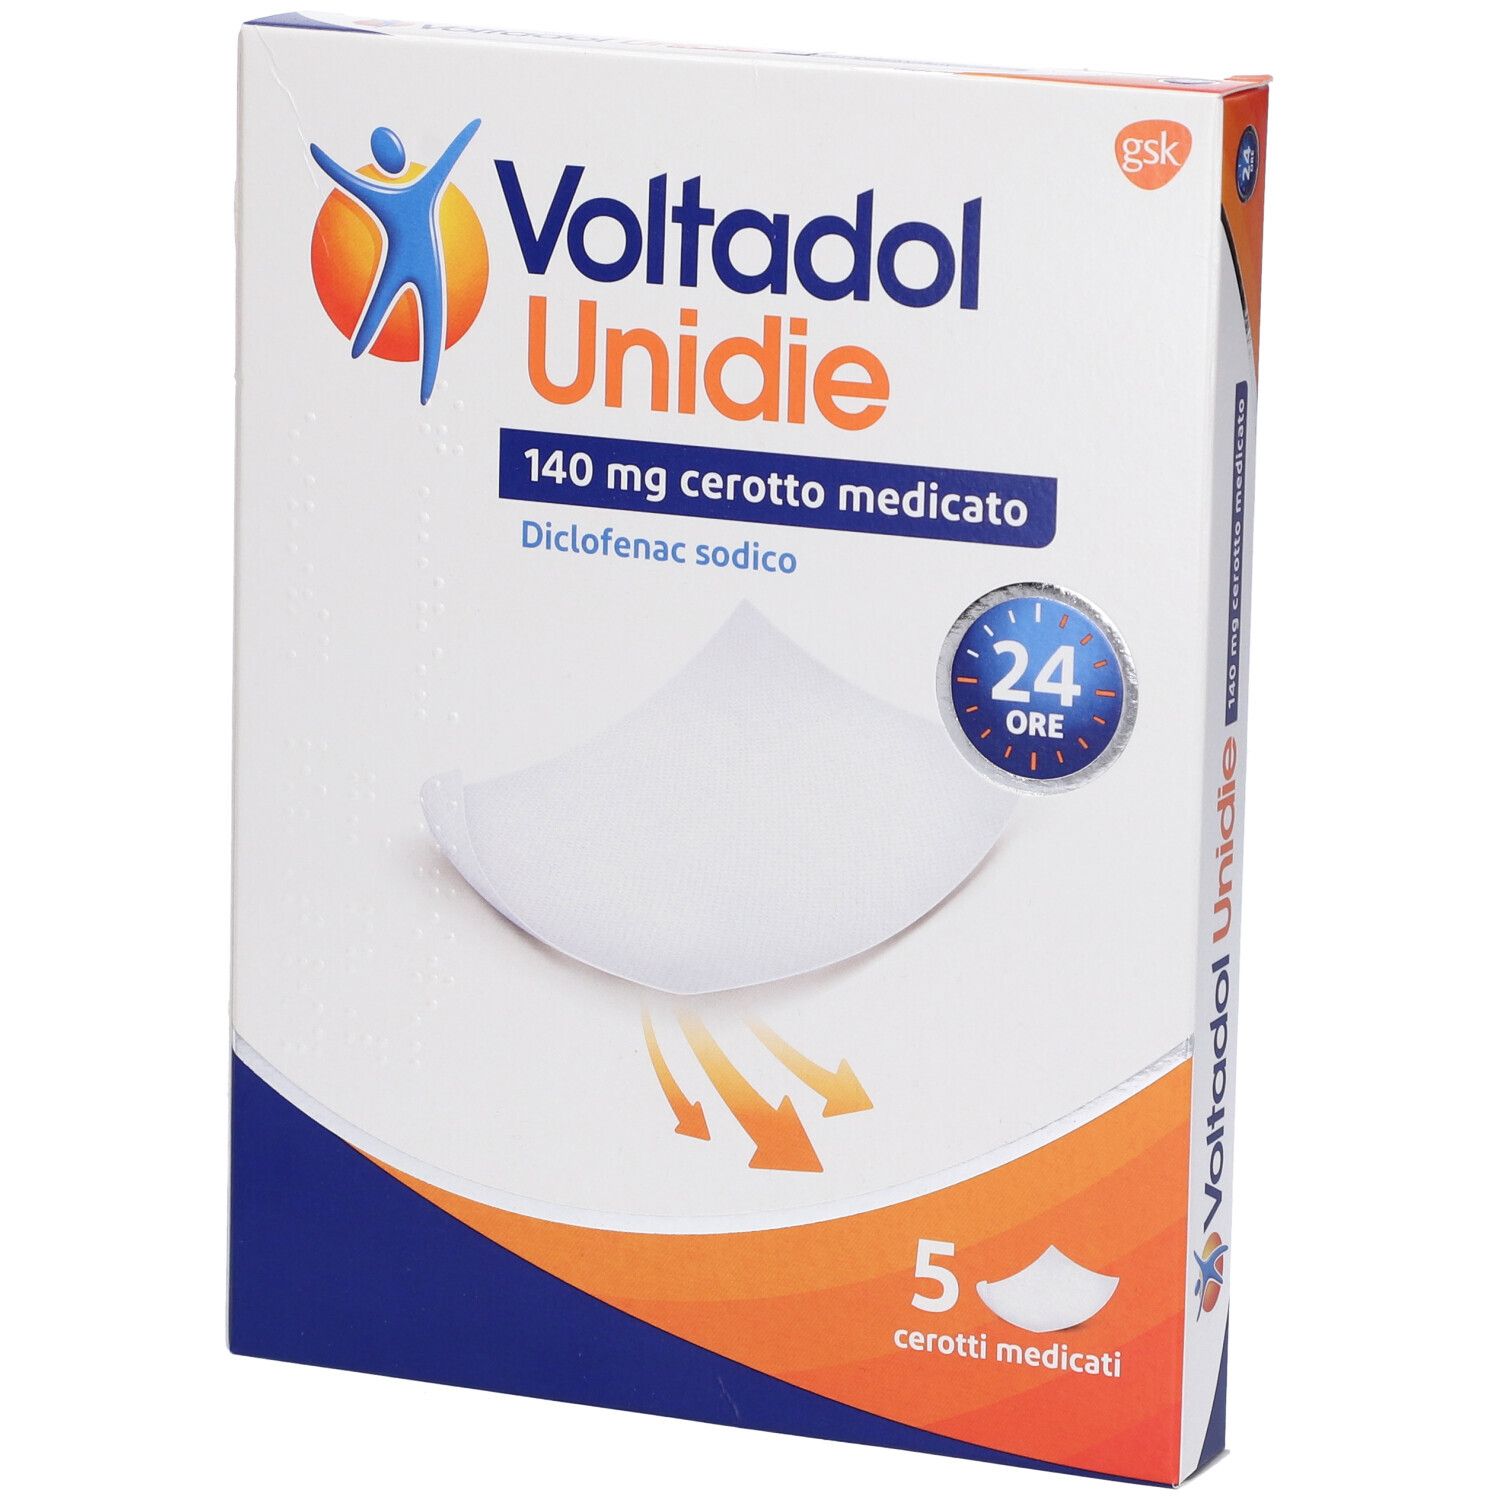 Voltadol Unidie Cerotto Medicato 5 pz | Redcare